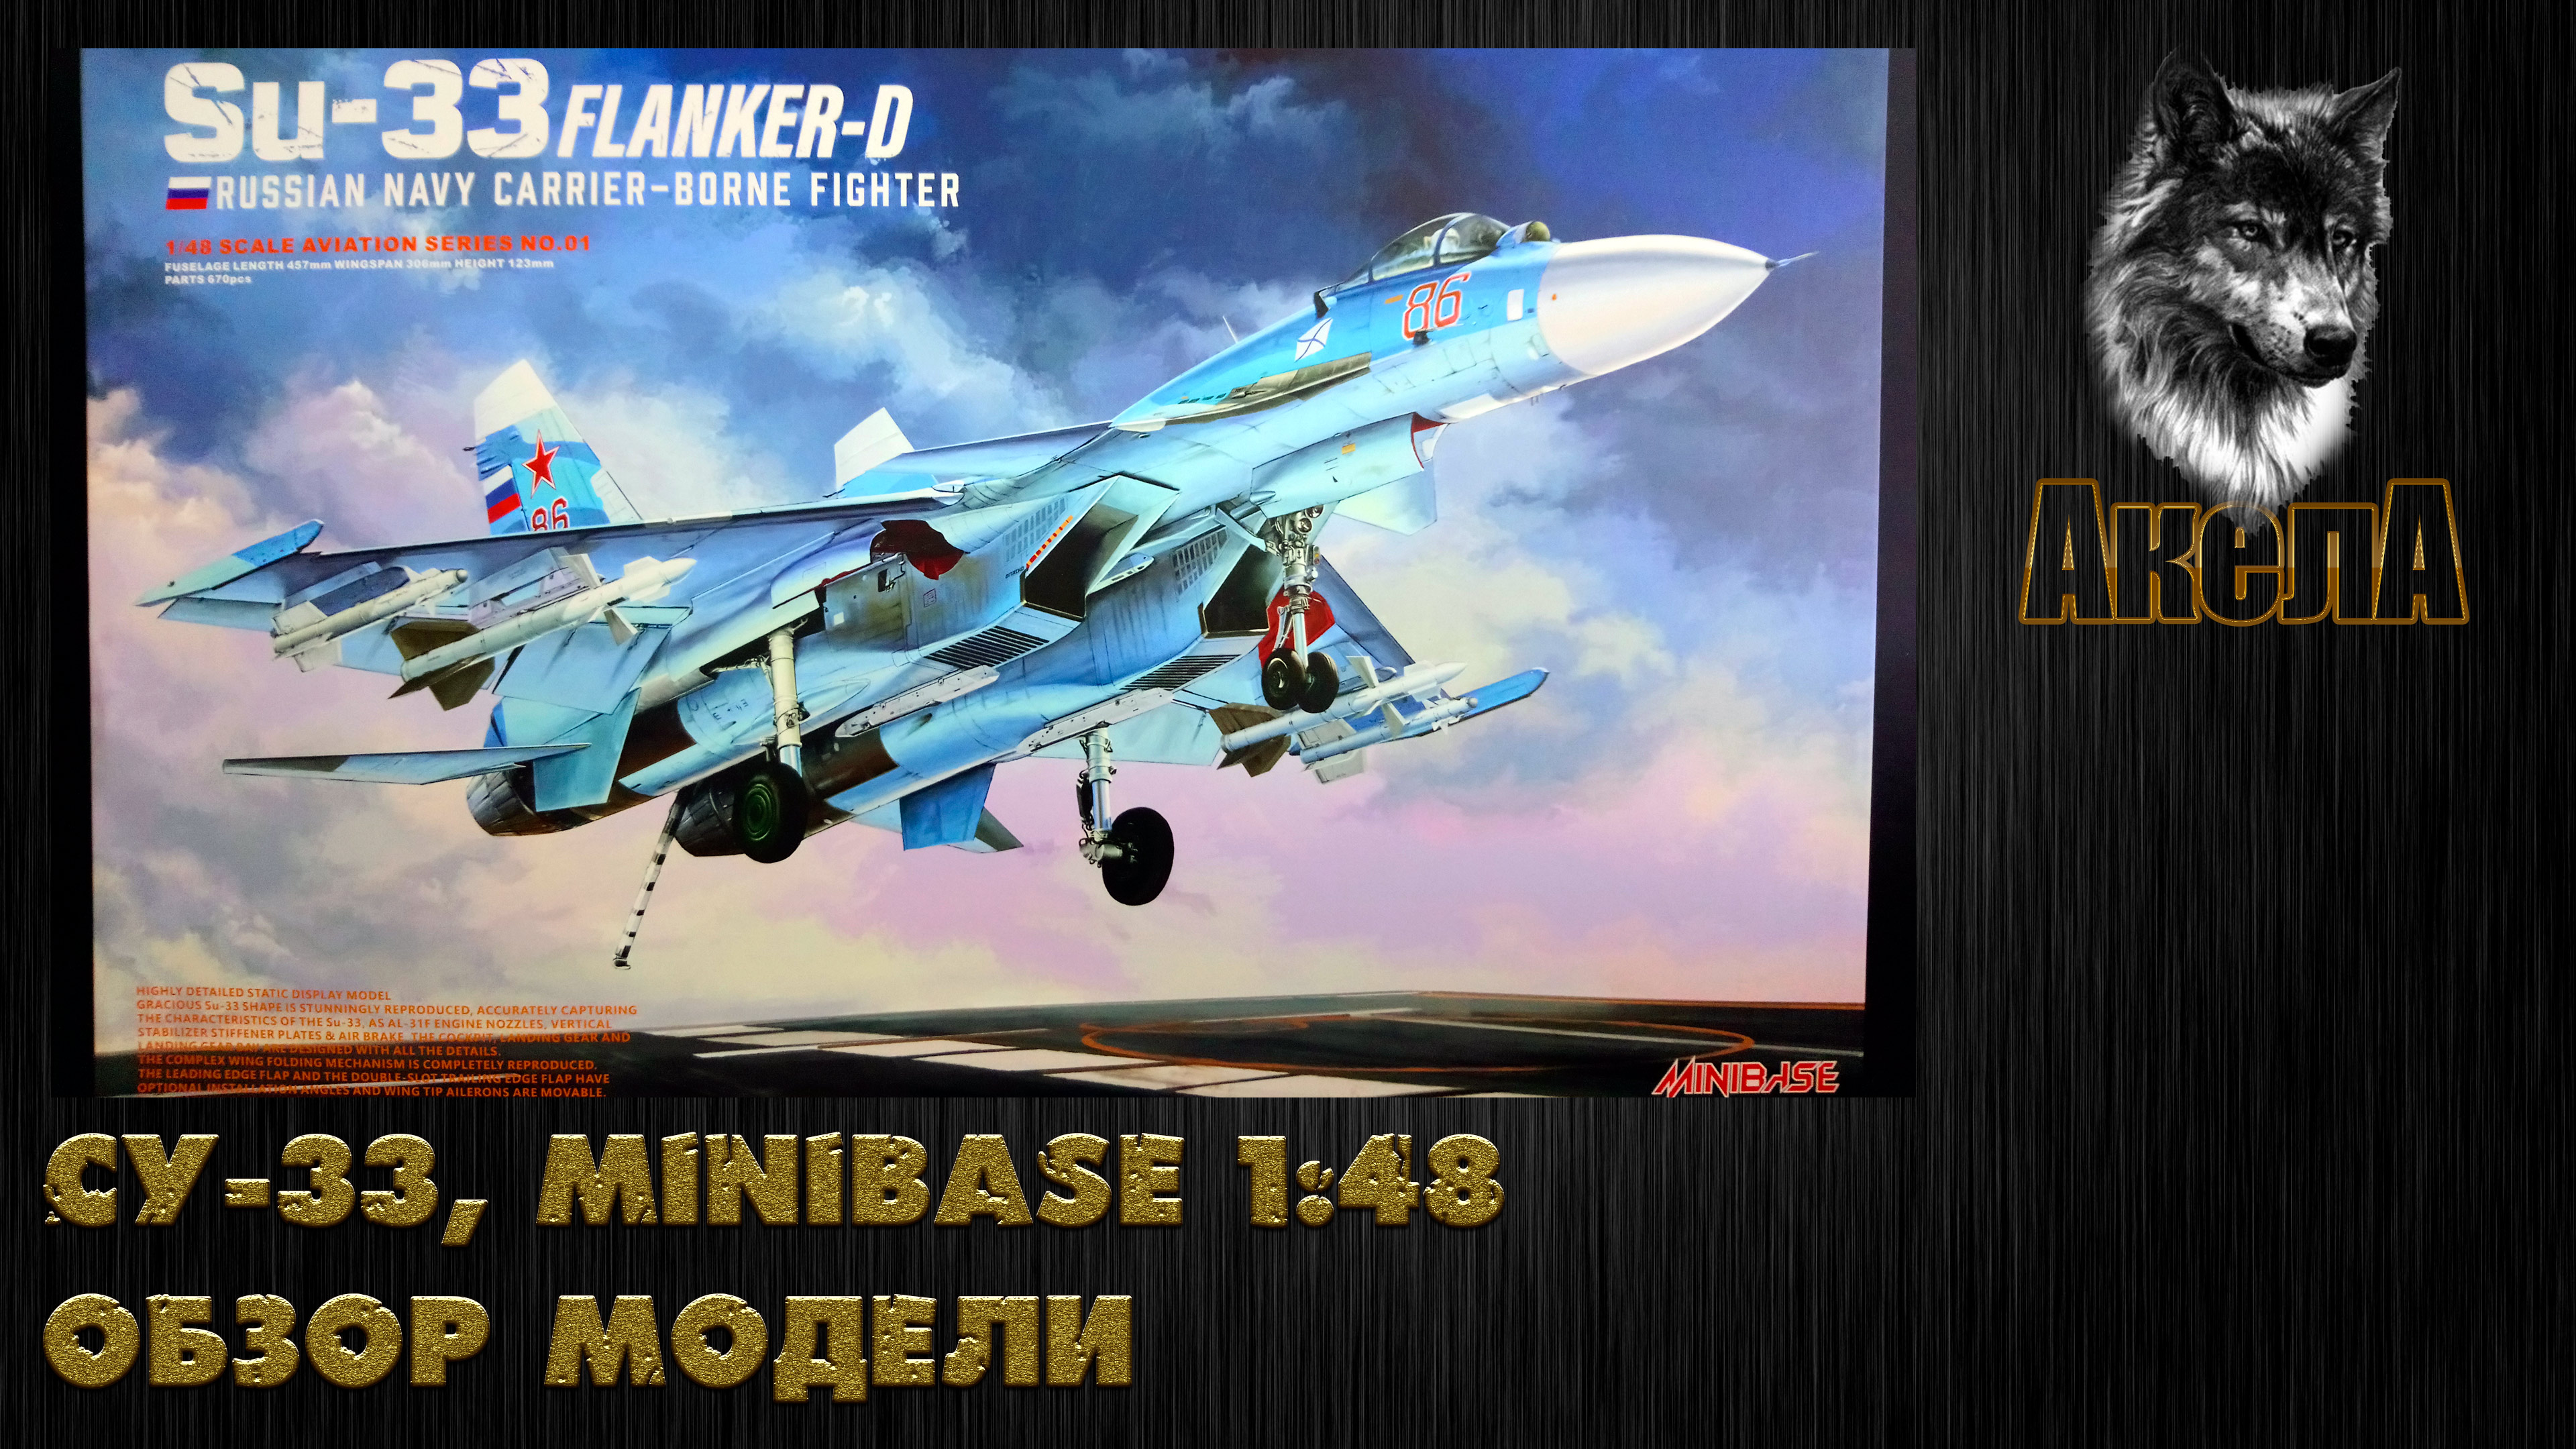 Обзор модели Су-33, Minibase 1/48